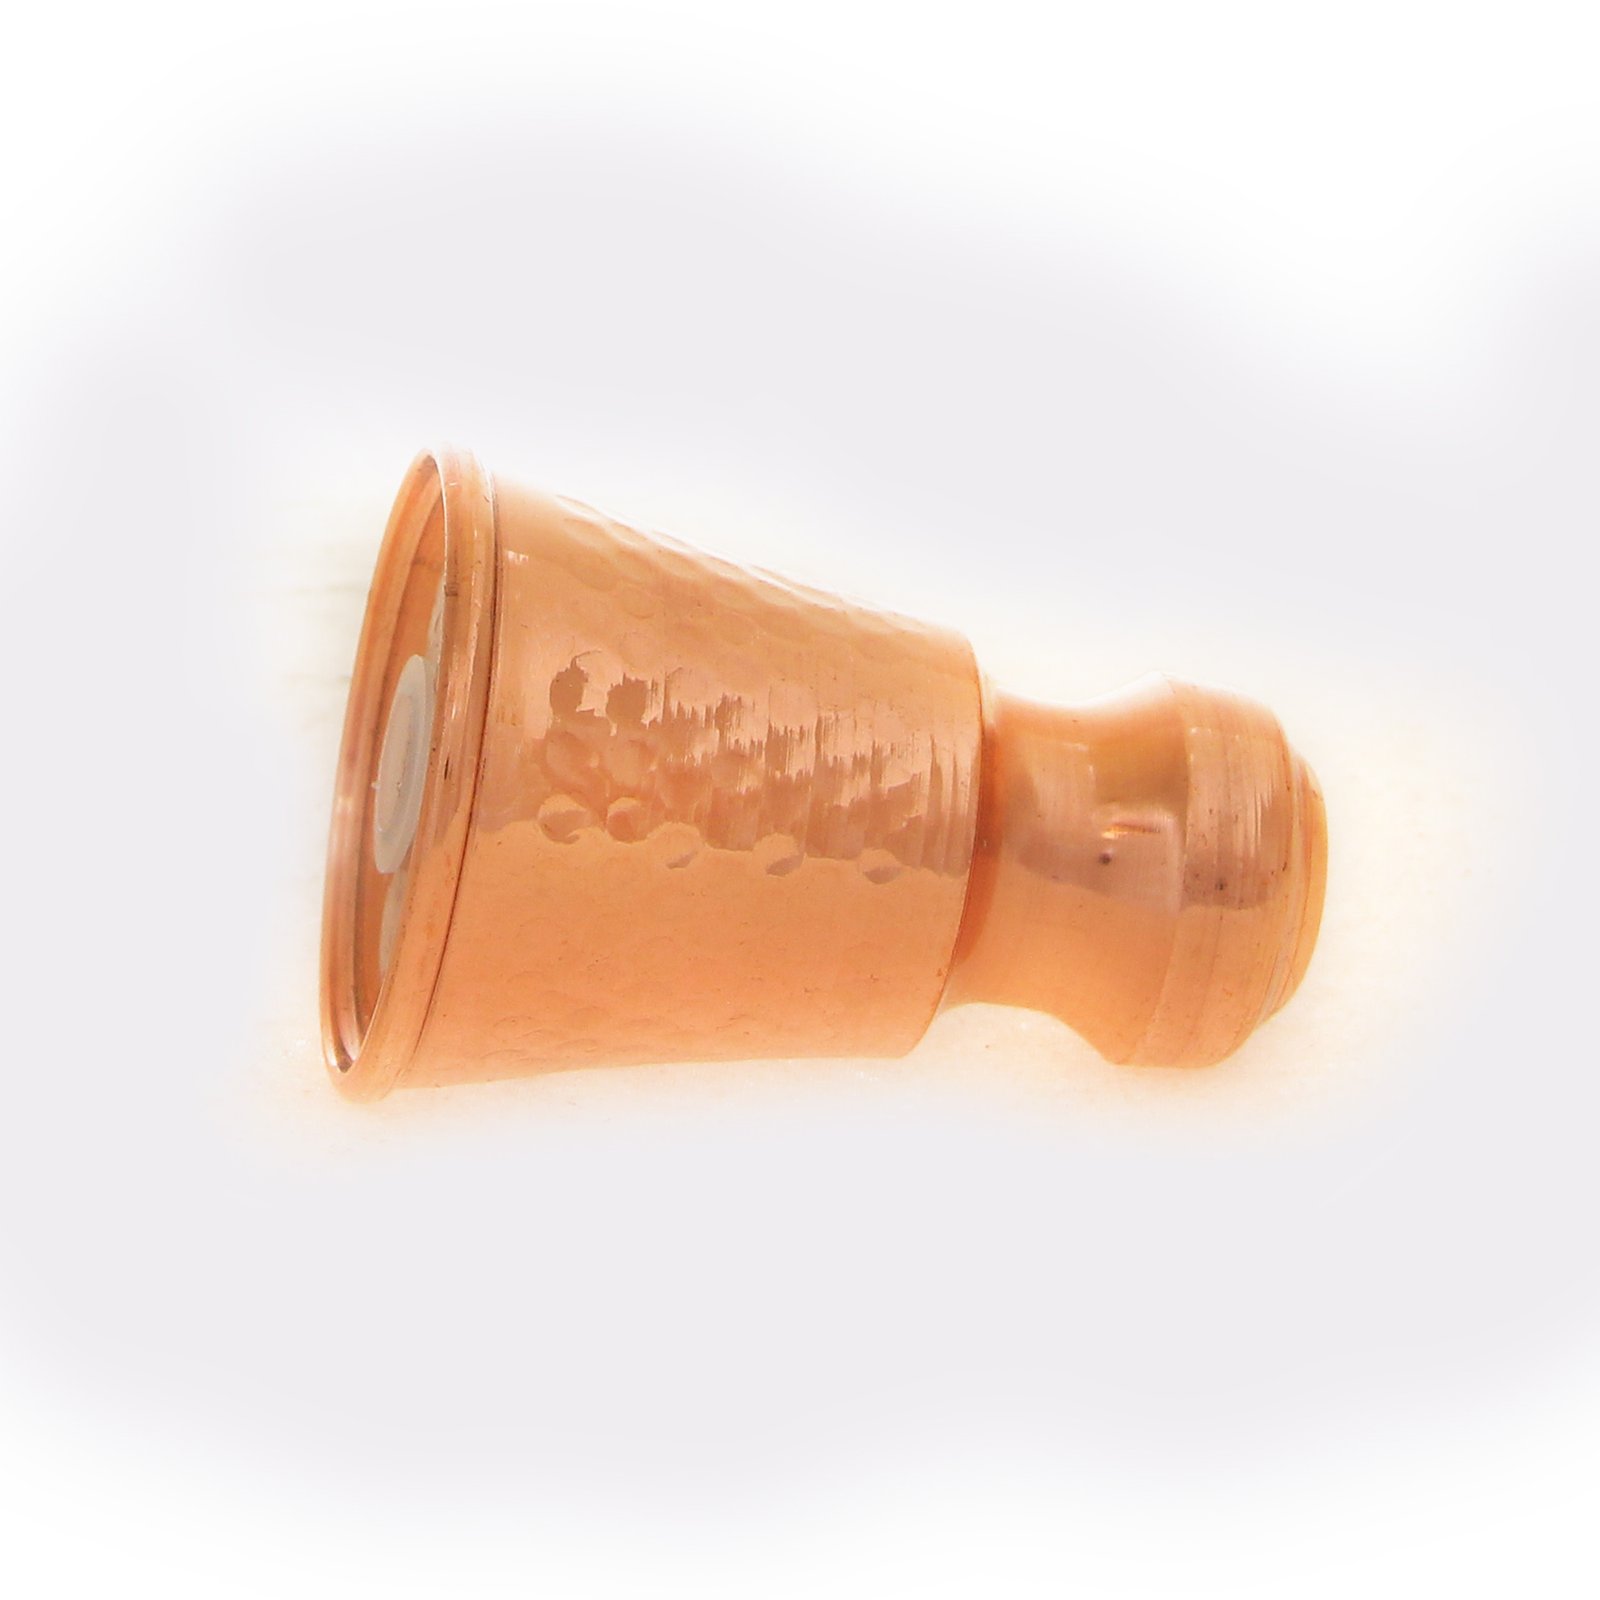 Handicraft Copper Spice container Damani model code 4398,buy copper stuff,buy copper handmades